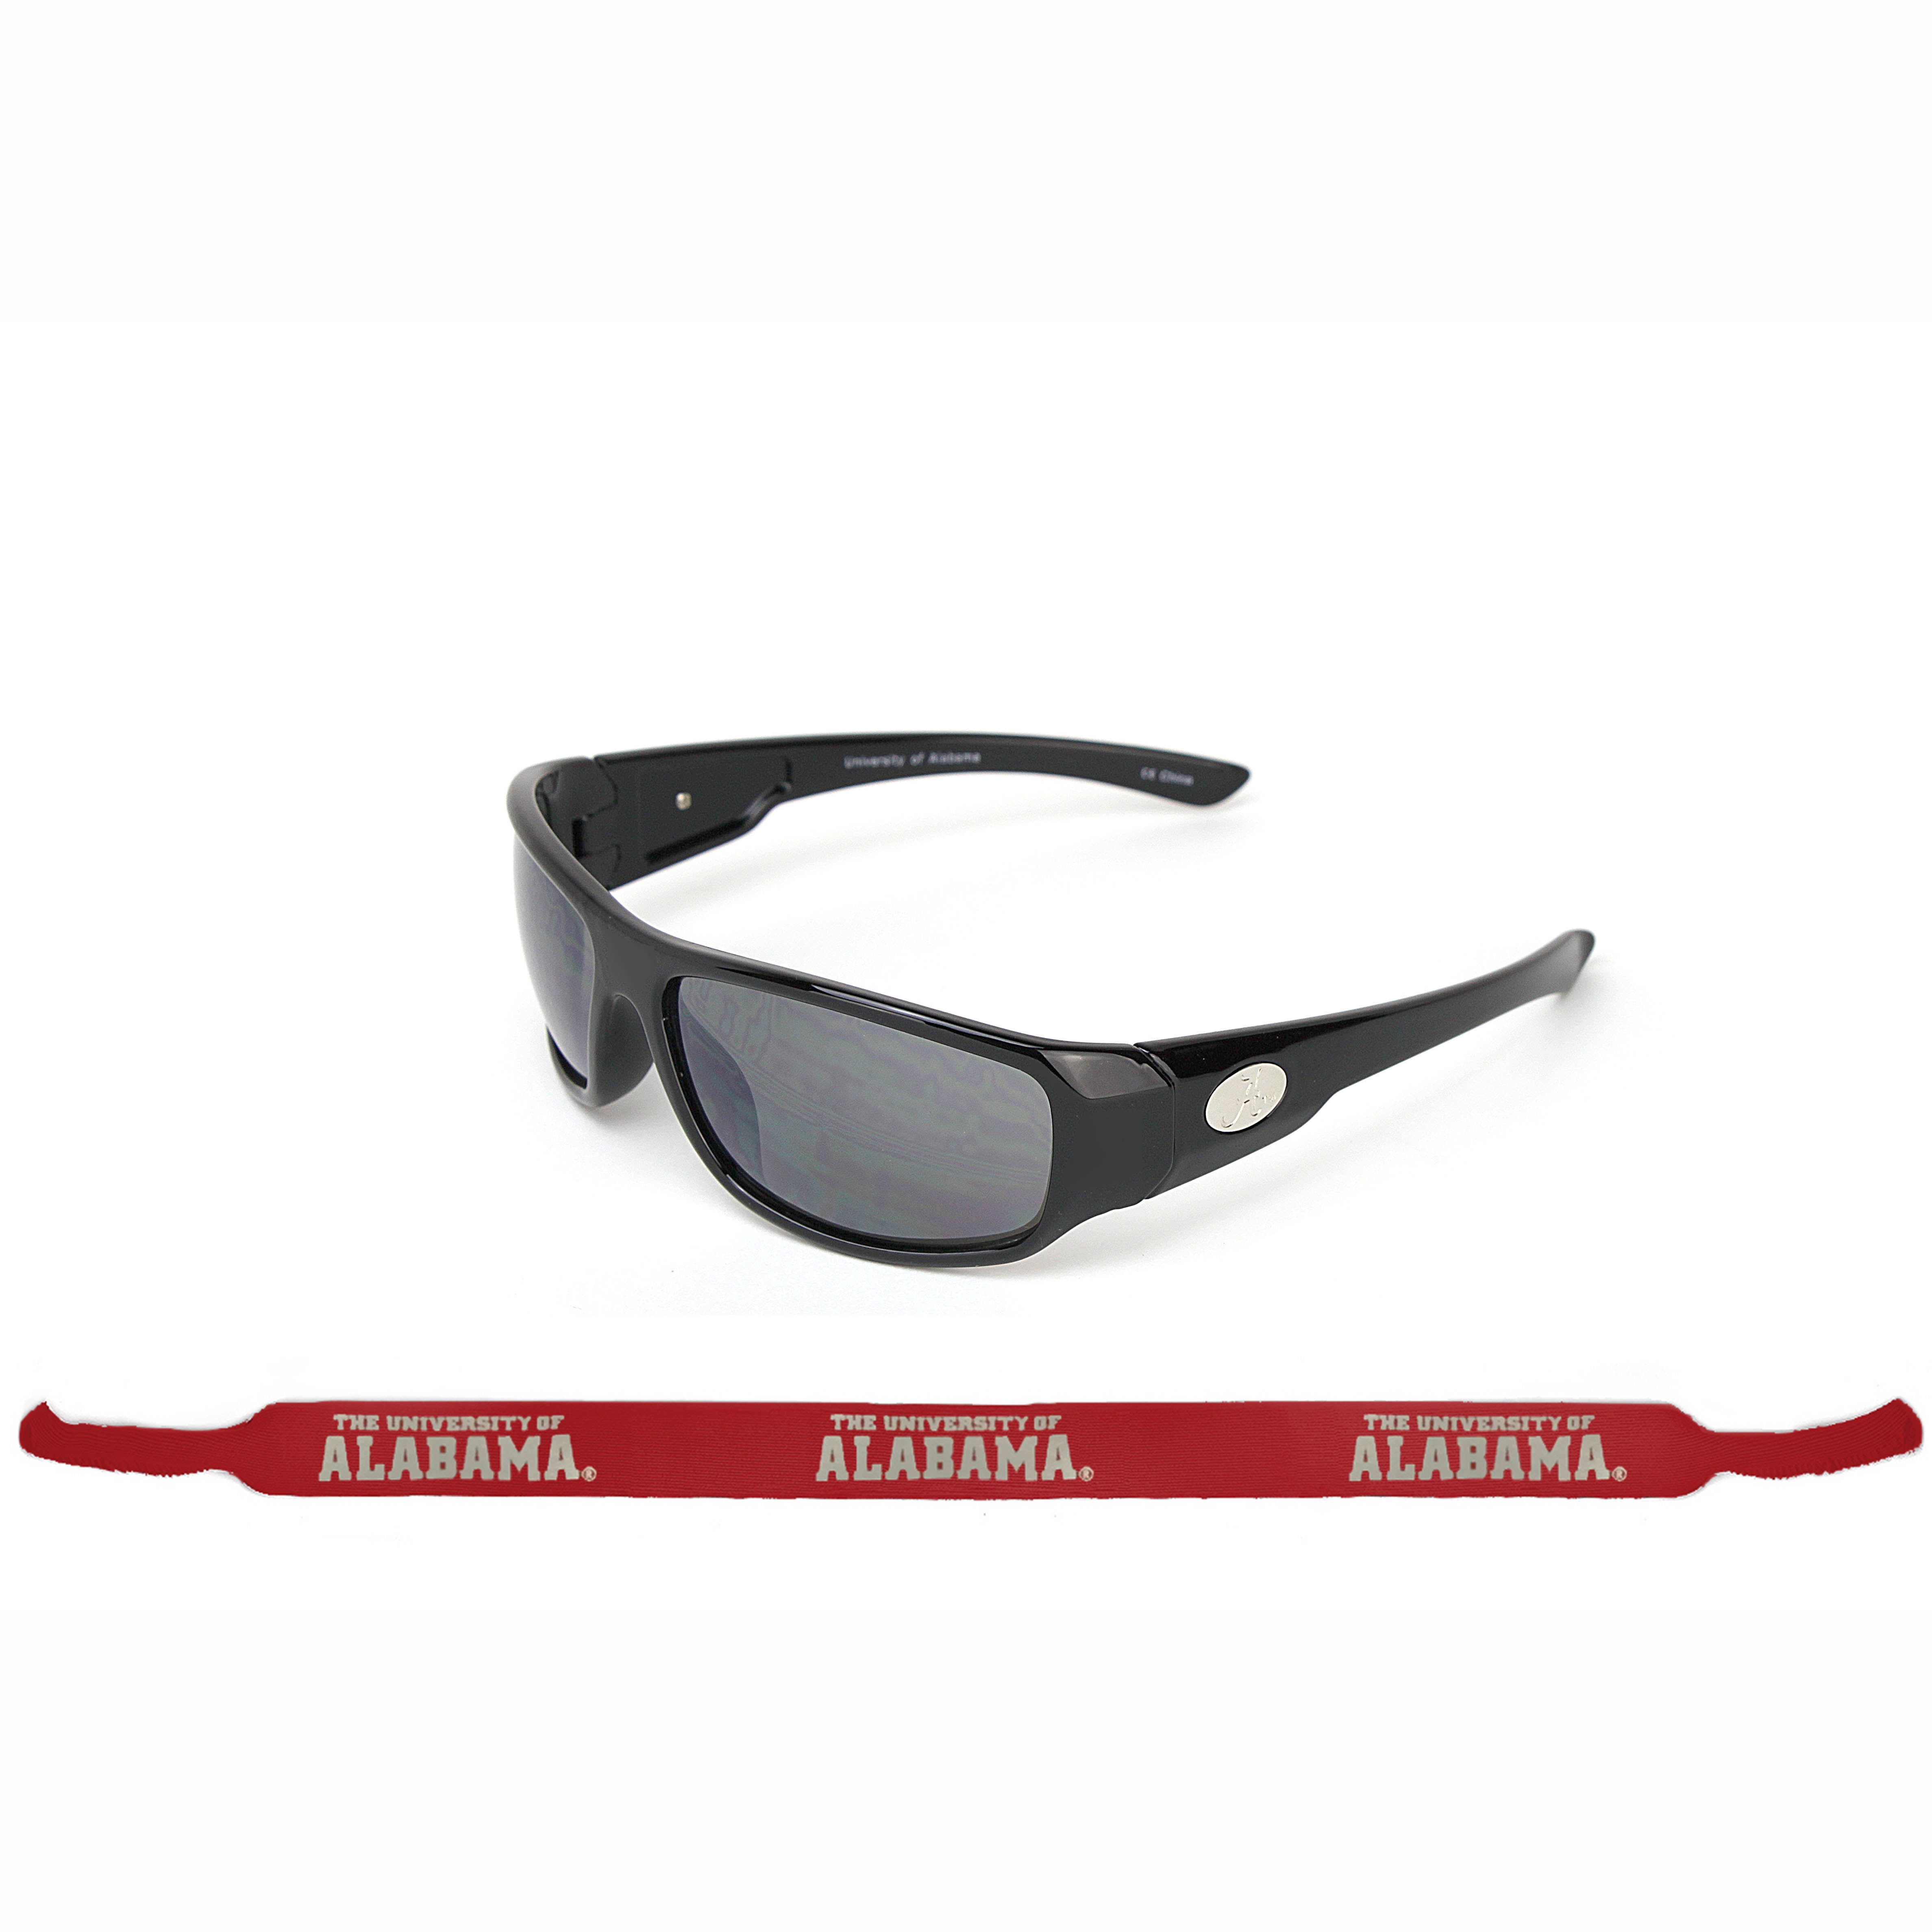 Black Adult Size NCAA Alabama Crimson Tide Chrome Wrap Sunglasses and Bag